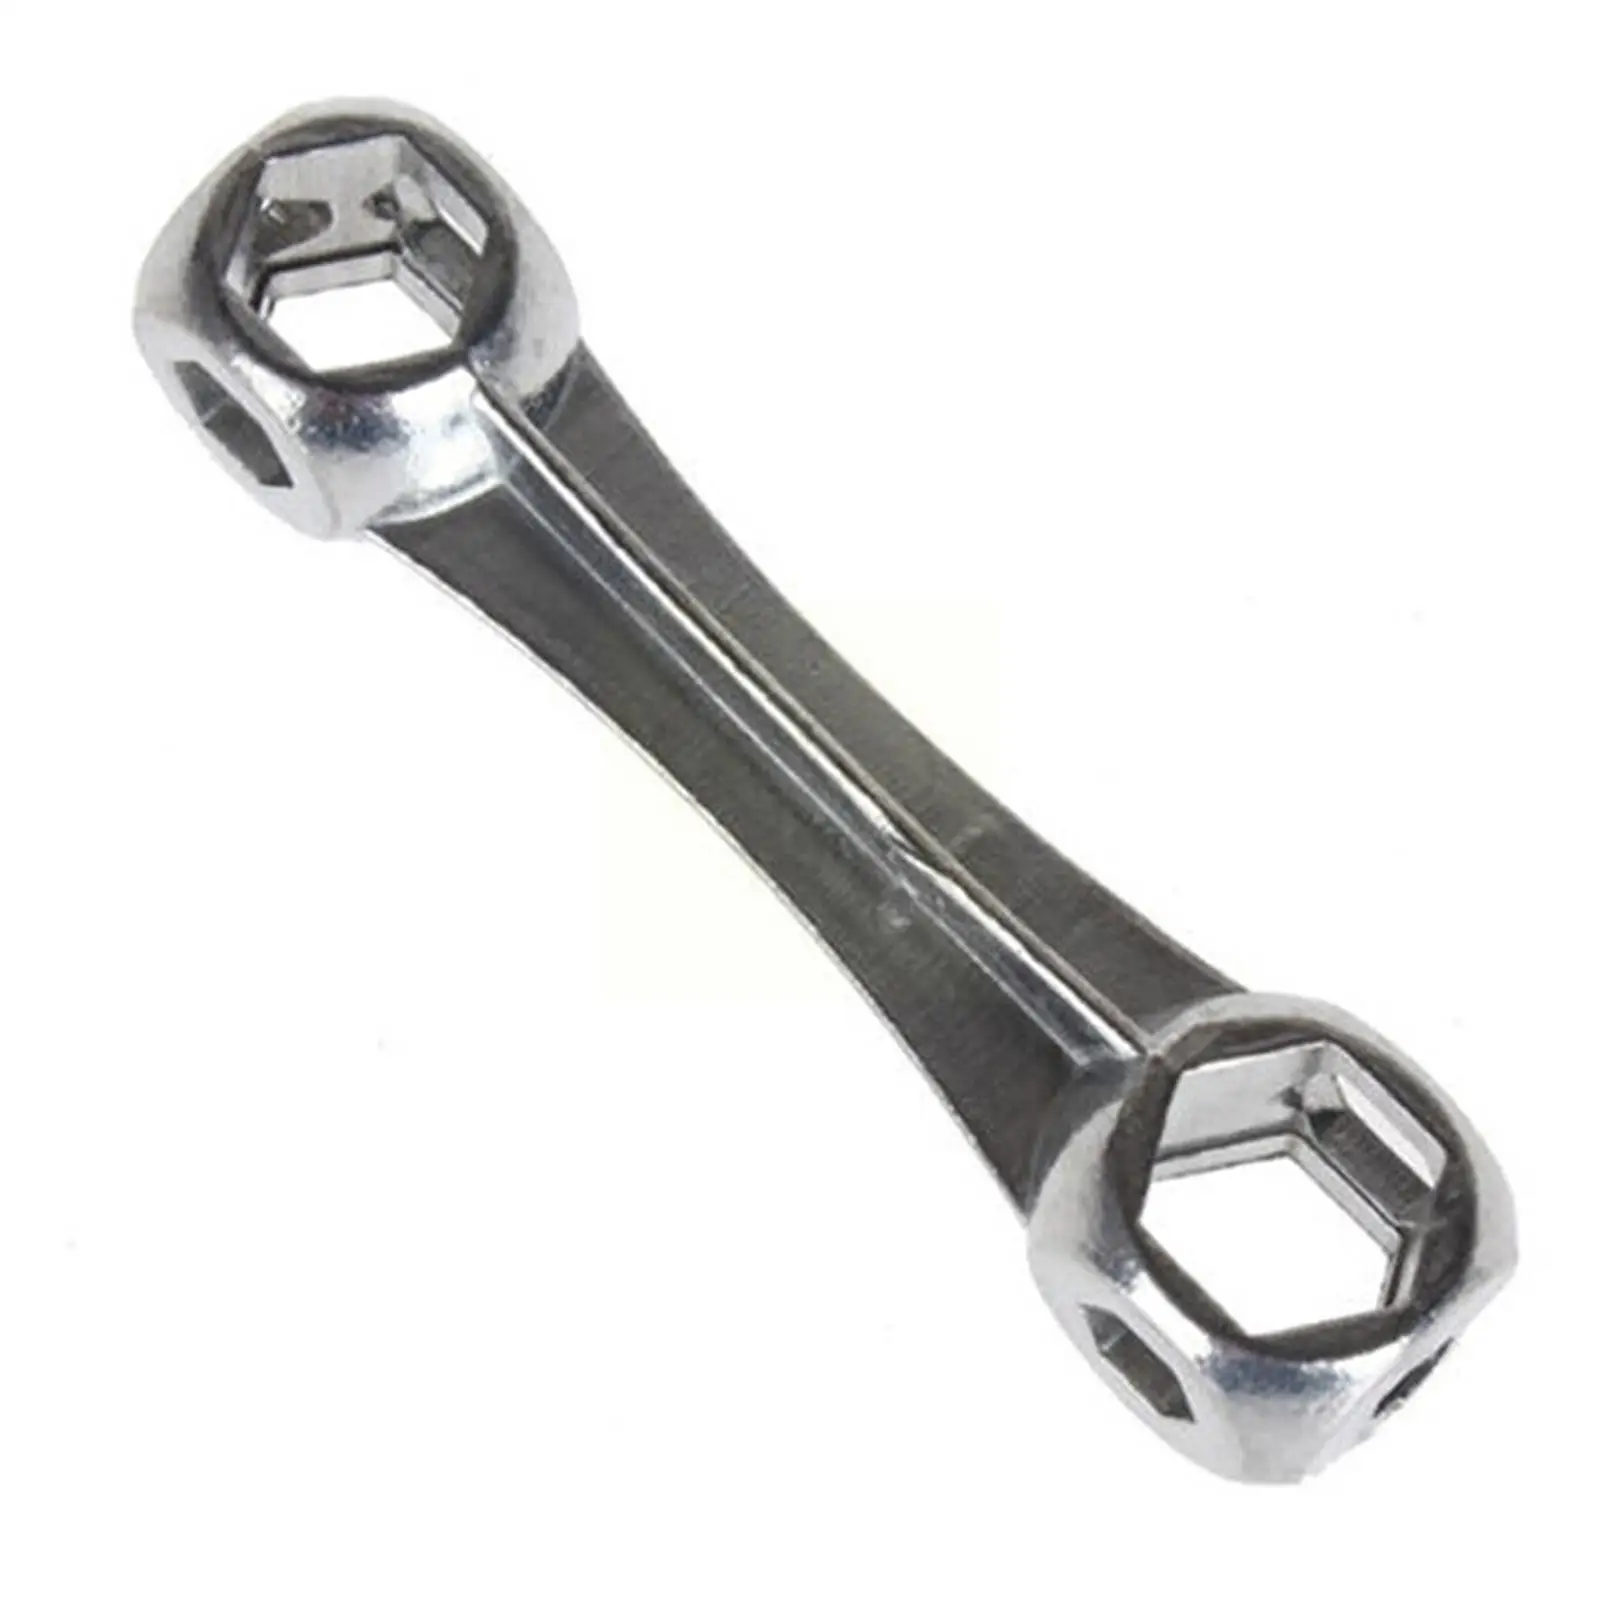 

Шестигранный ключ H8H8 в форме кости, гаечный ключ с 10 отверстиями, размер 6-15 мм, велосипедный, алюминиевый, прочный, 1 инструмент для ремонта цинка